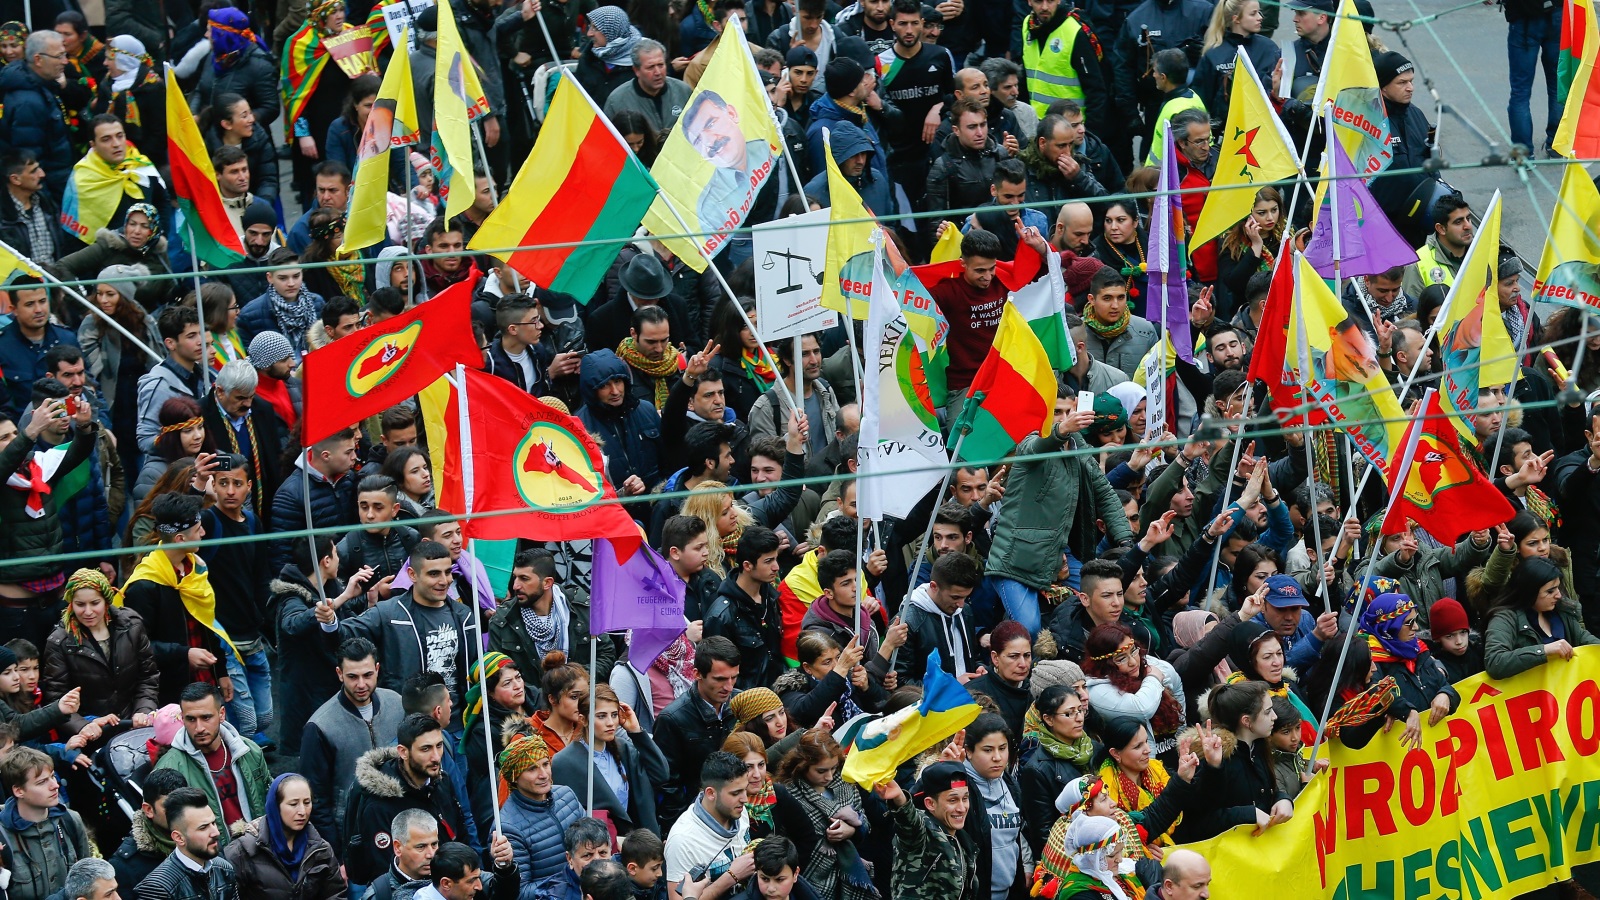 ‪السلطات الألمانية سمحت بمظاهرة الأكراد ومنعت فعاليات مؤيدة لأردوغان‬ السلطات الألمانية سمحت بمظاهرة الأكراد ومنعت فعاليات مؤيدة لأردوغان (رويترز)